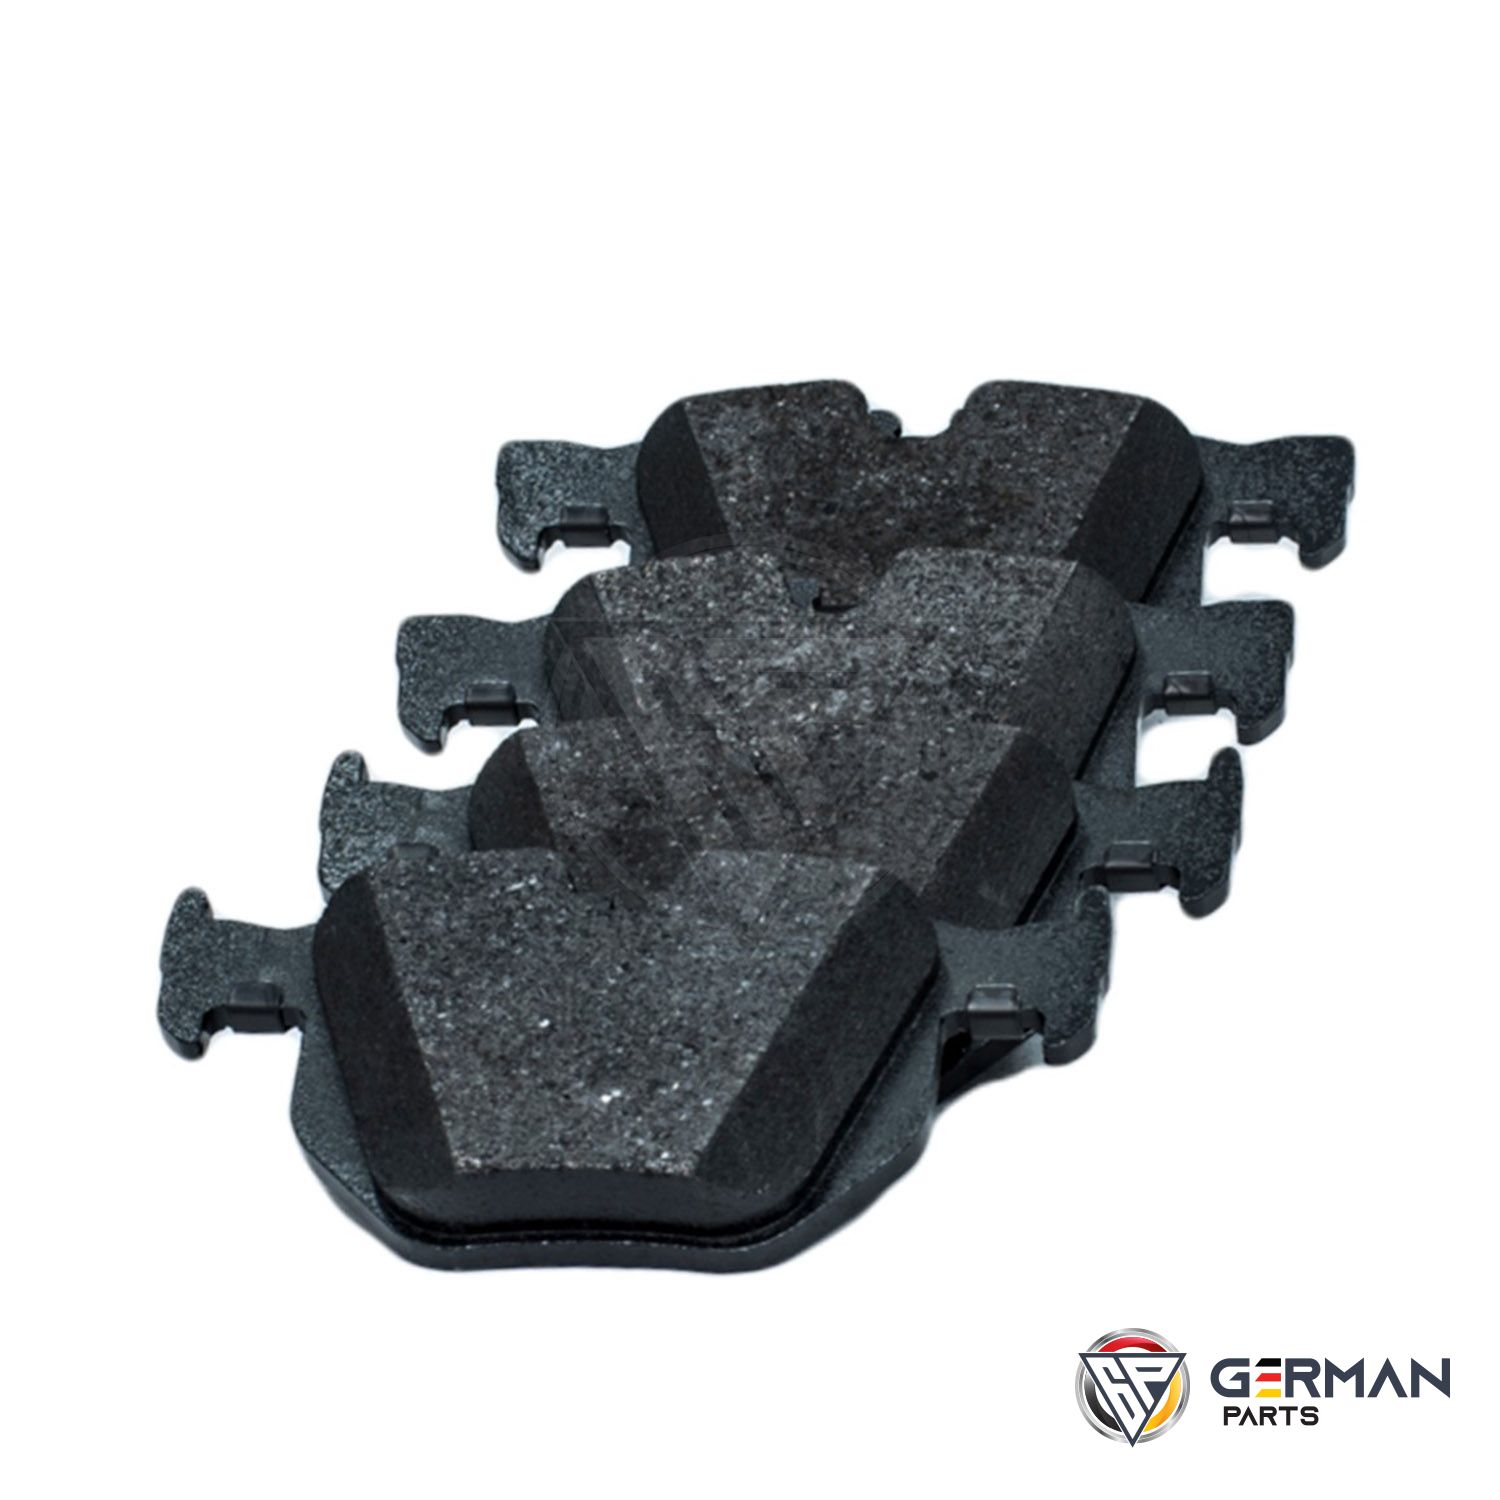 Buy BMW Rear Brake Pad Set 34216776937 - German Parts